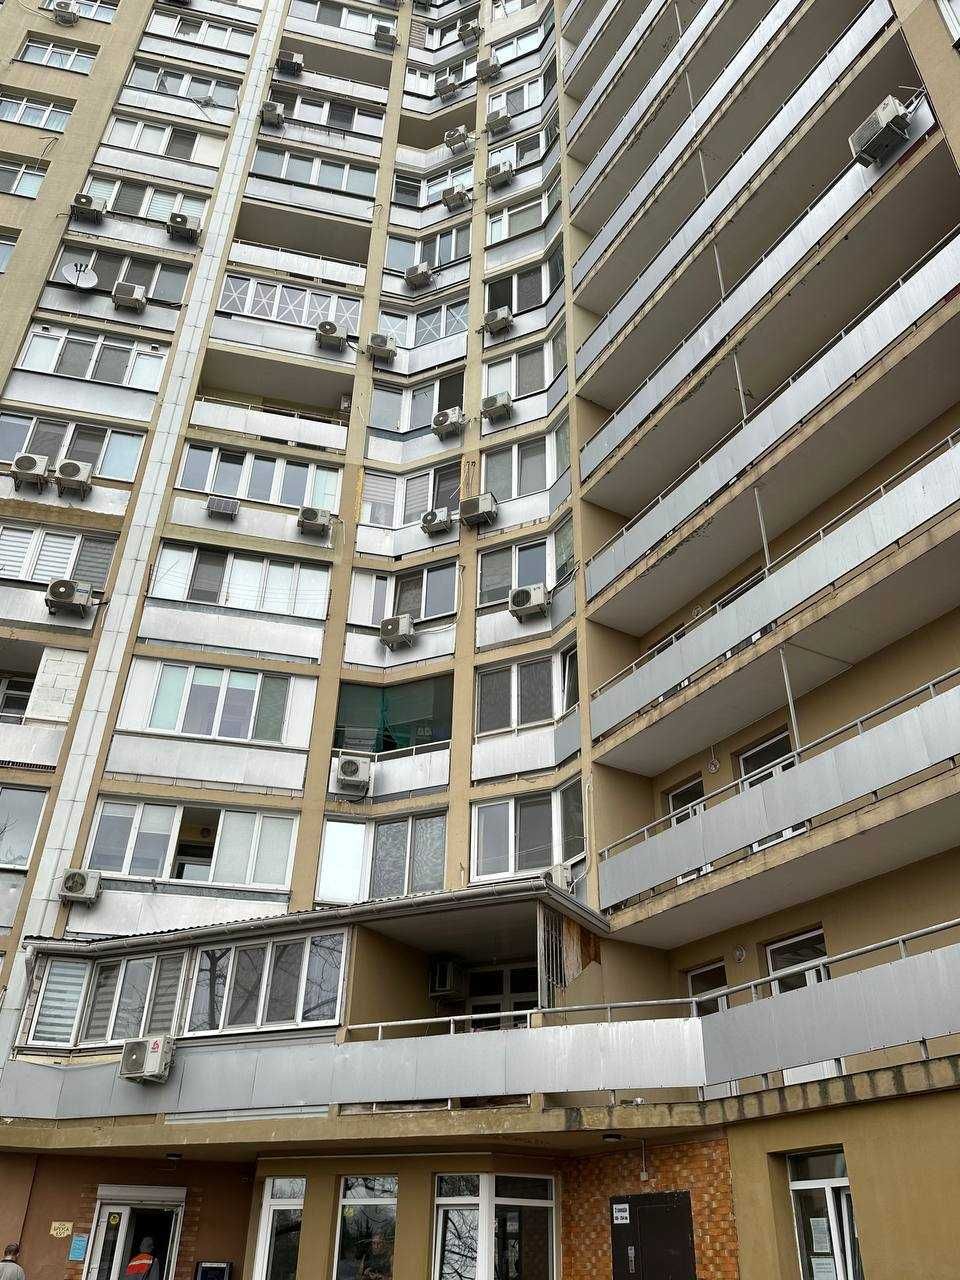 Продам 1-комнатную квартиру 50м2 с ремонтом в ЖК"Малиновский"!